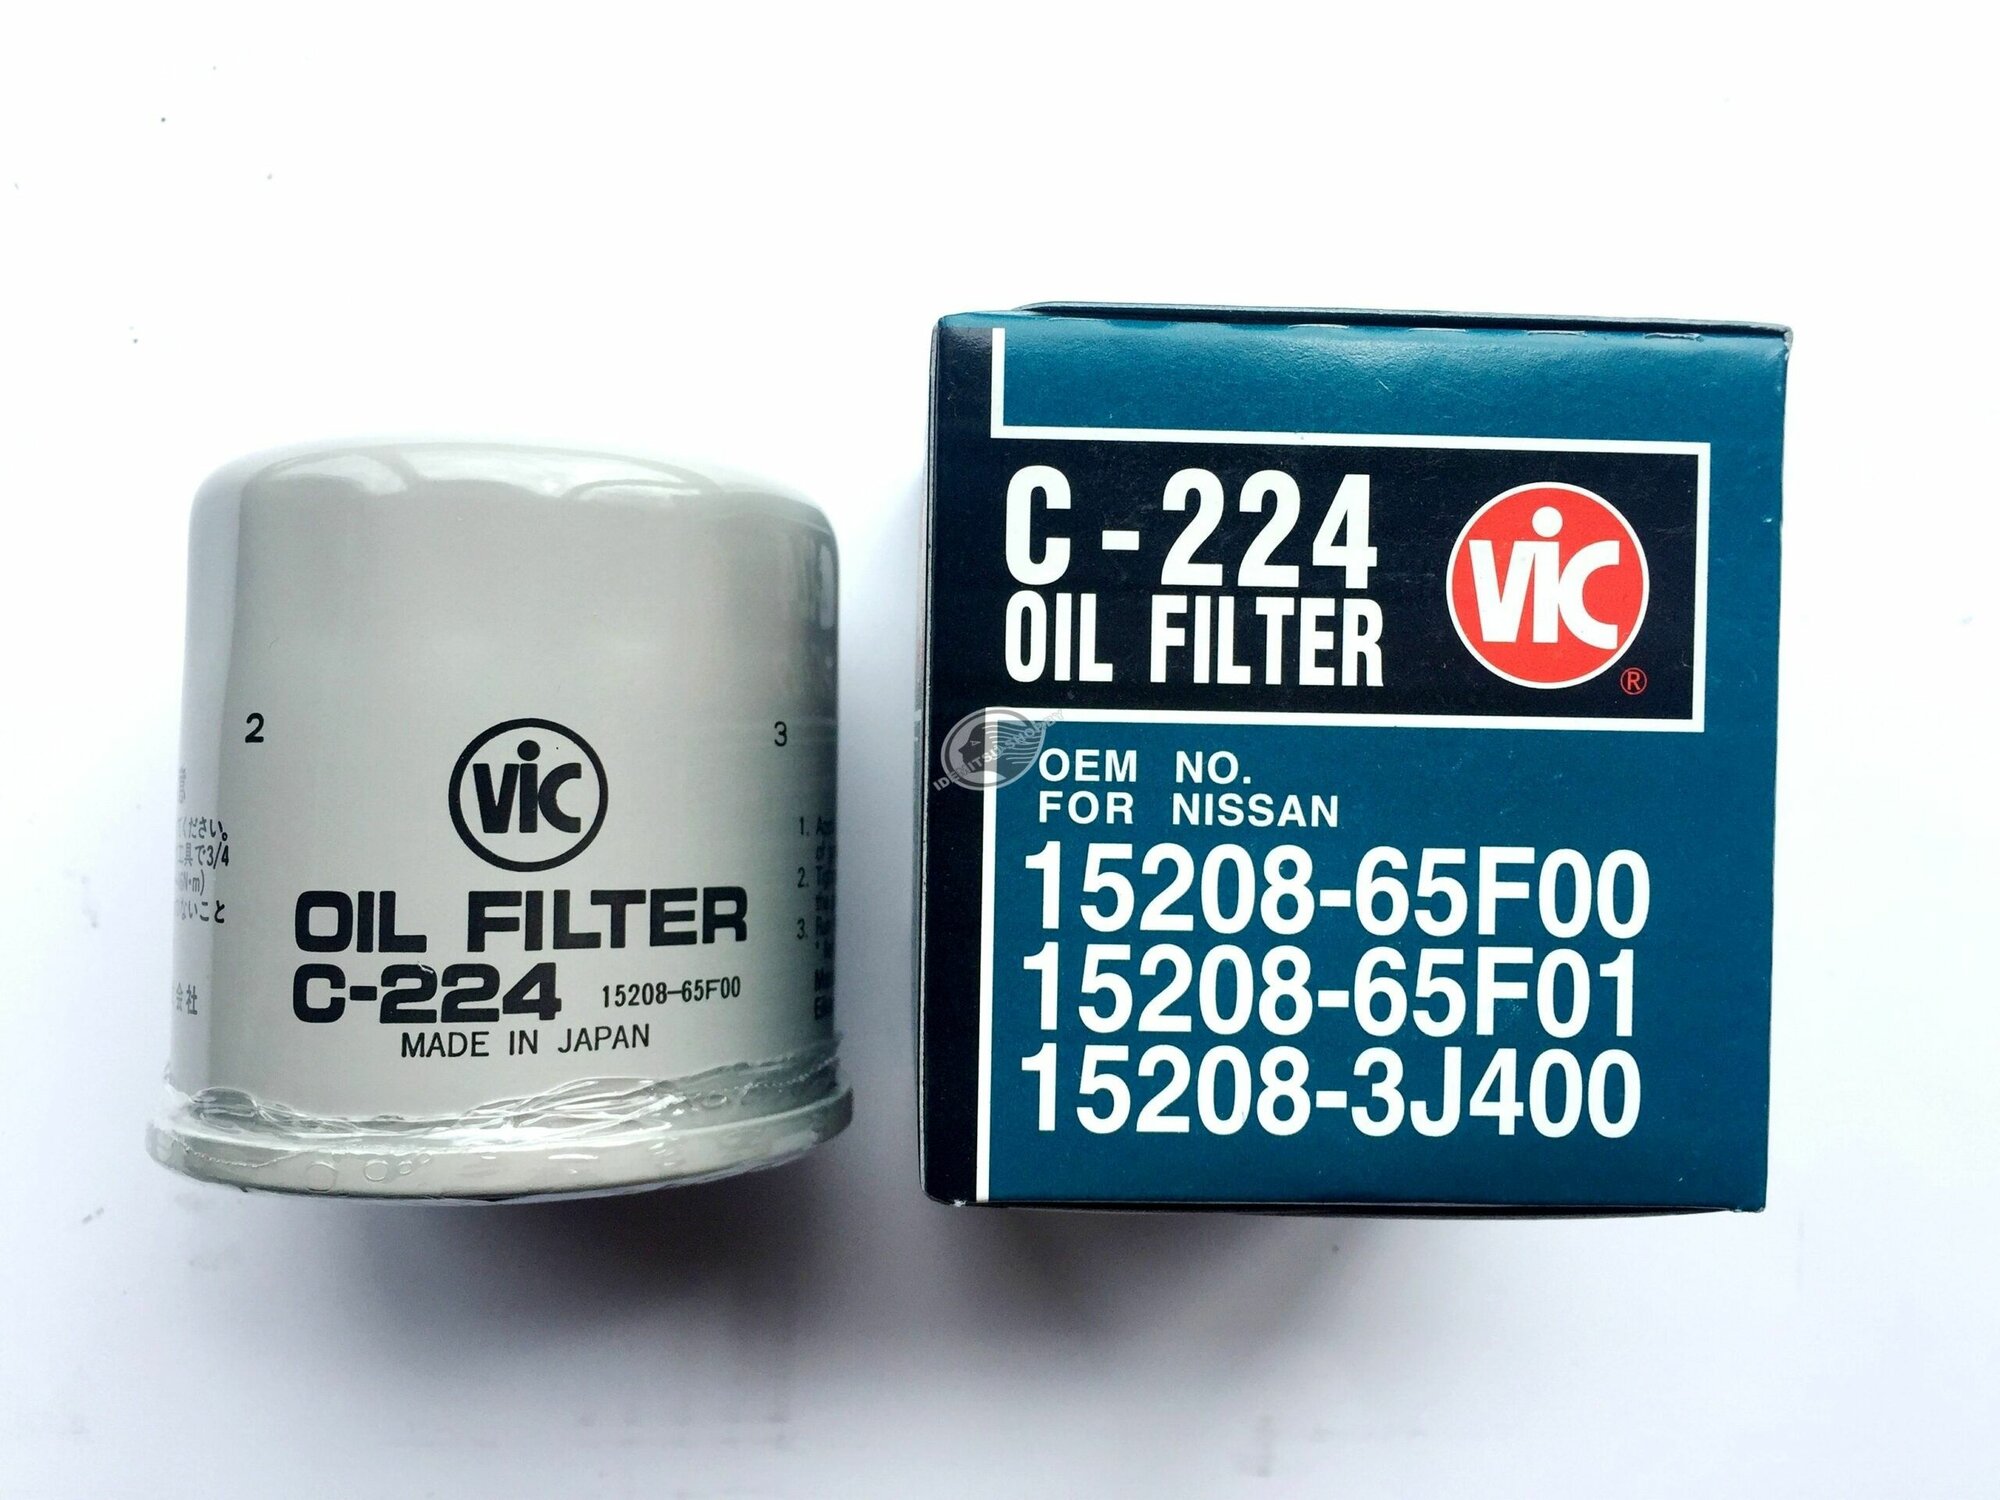 Фильтр масляный VIC C-224 для Nissan, Almera, Primera, Sunny, Bluebird (Япония)